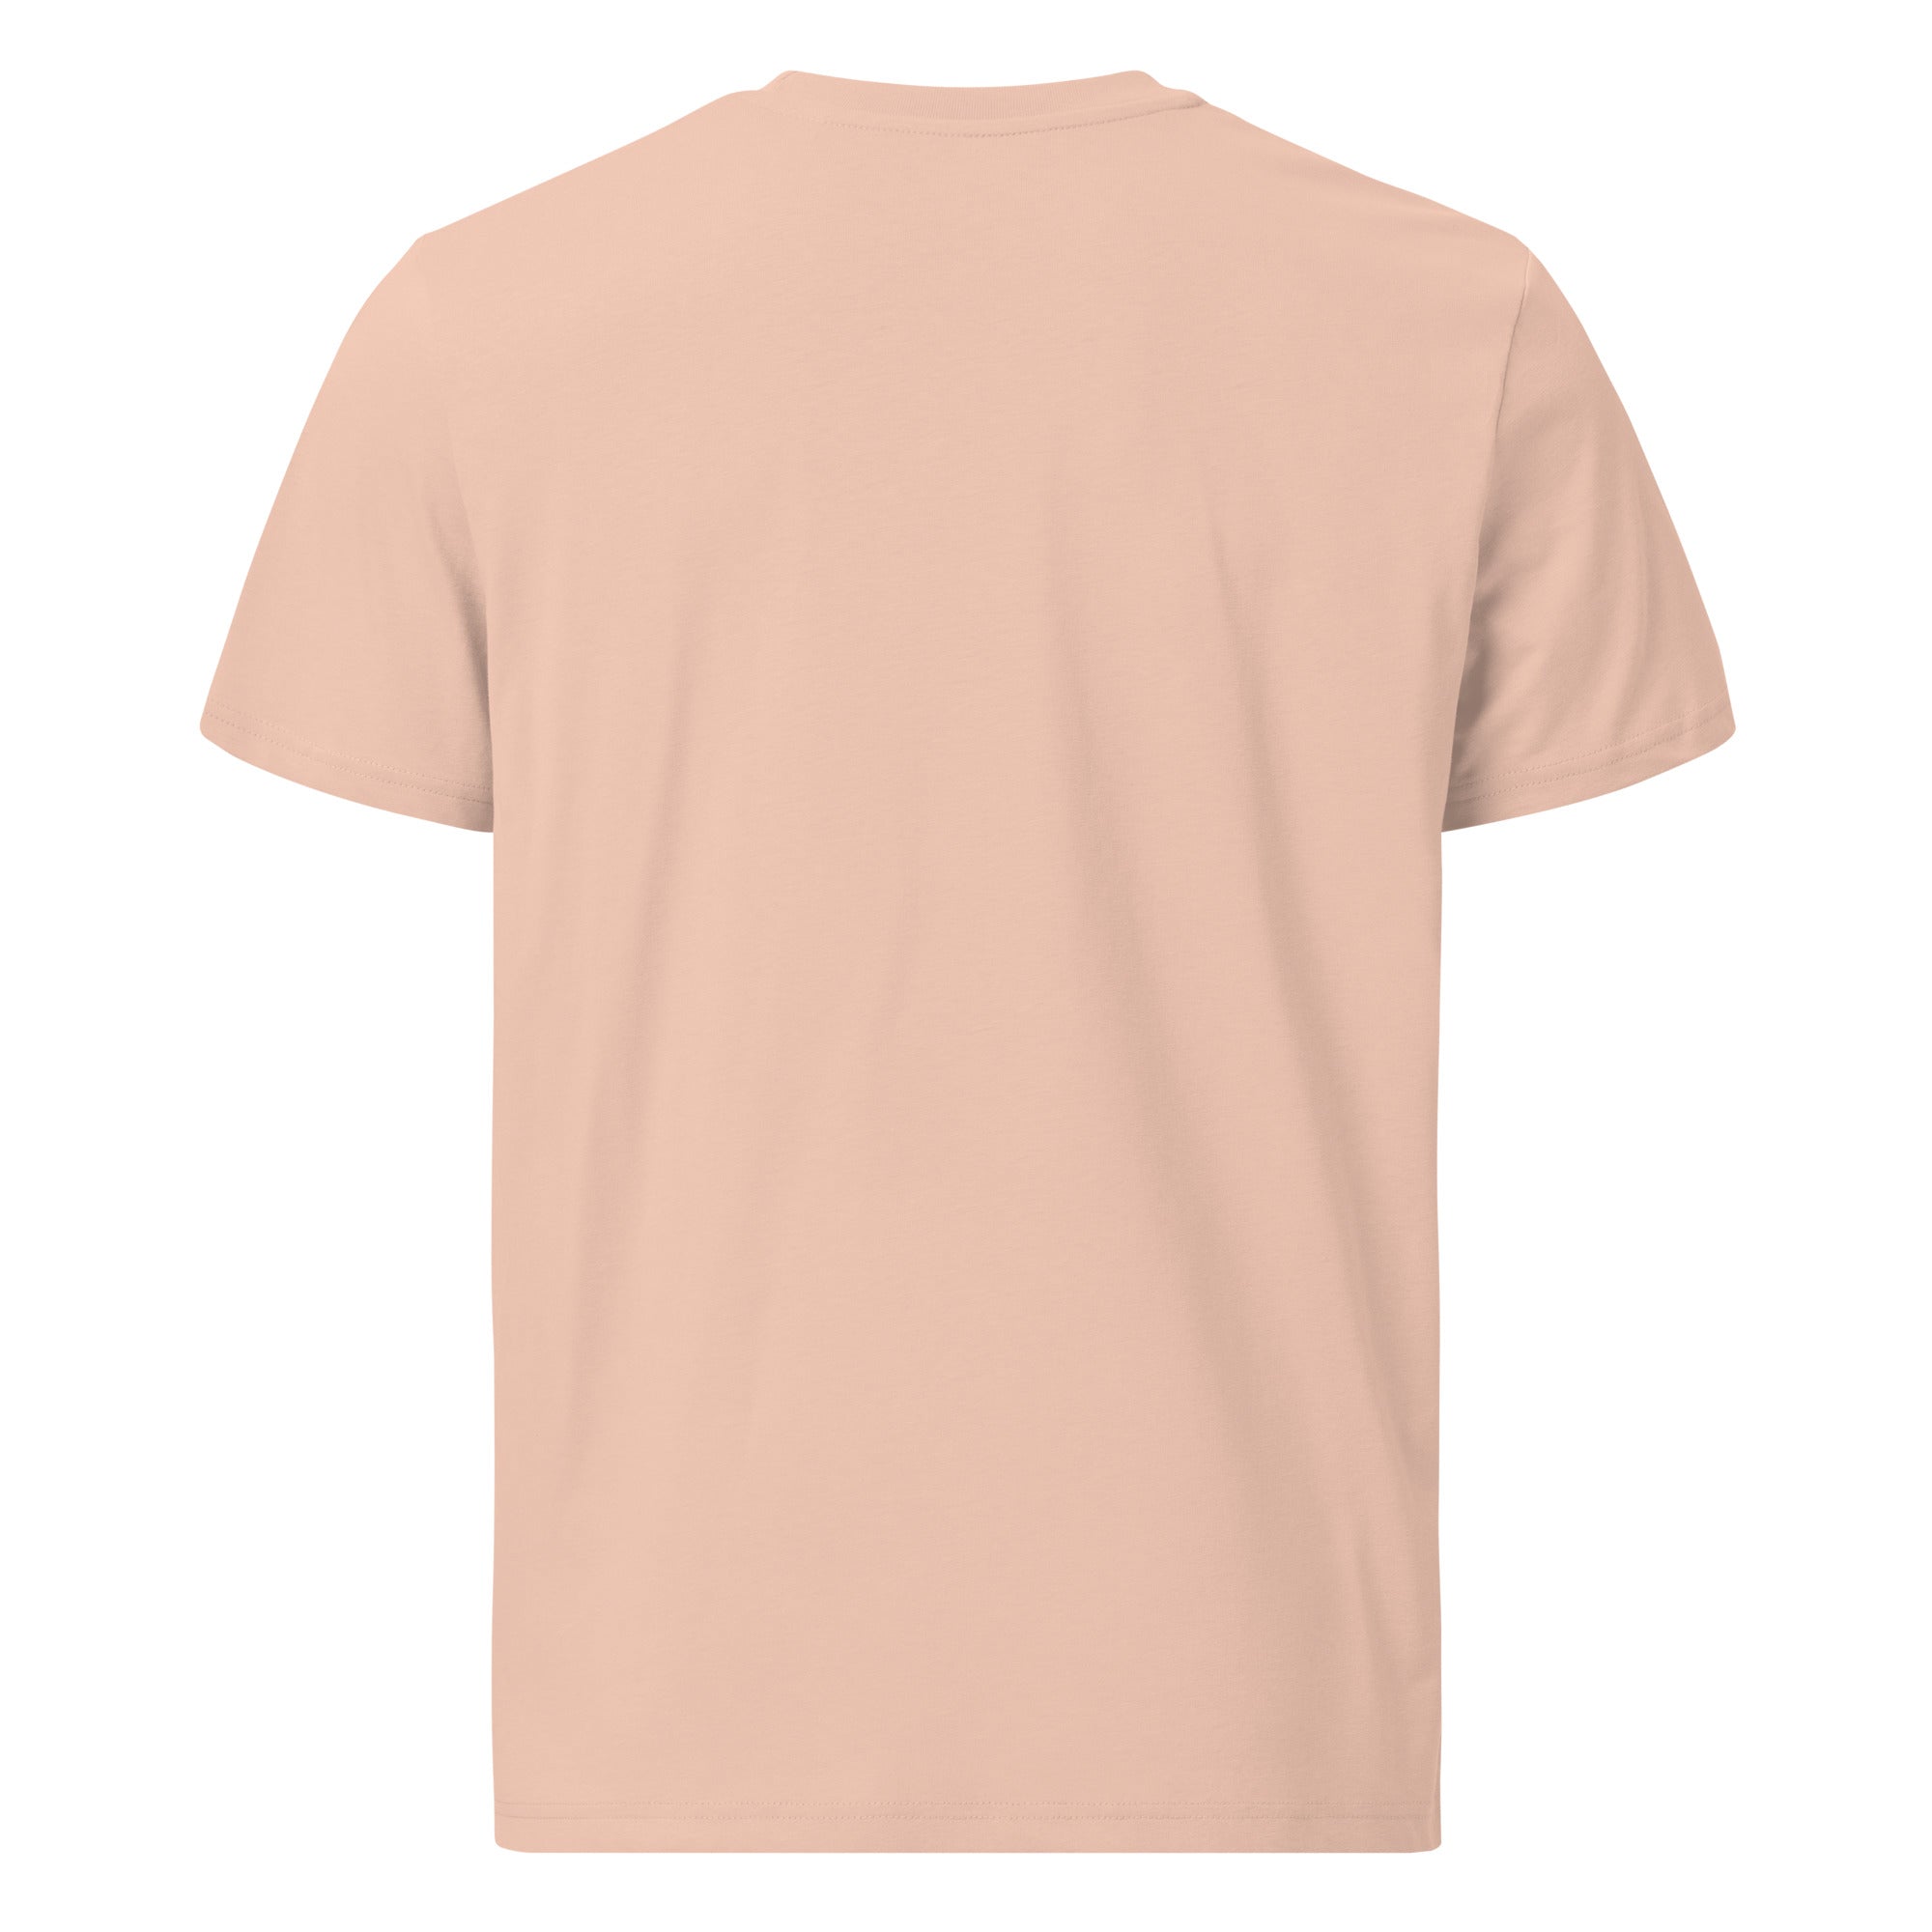 T-shirt unisexe en coton biologique The Skiing Cowgirl sur couleurs claires